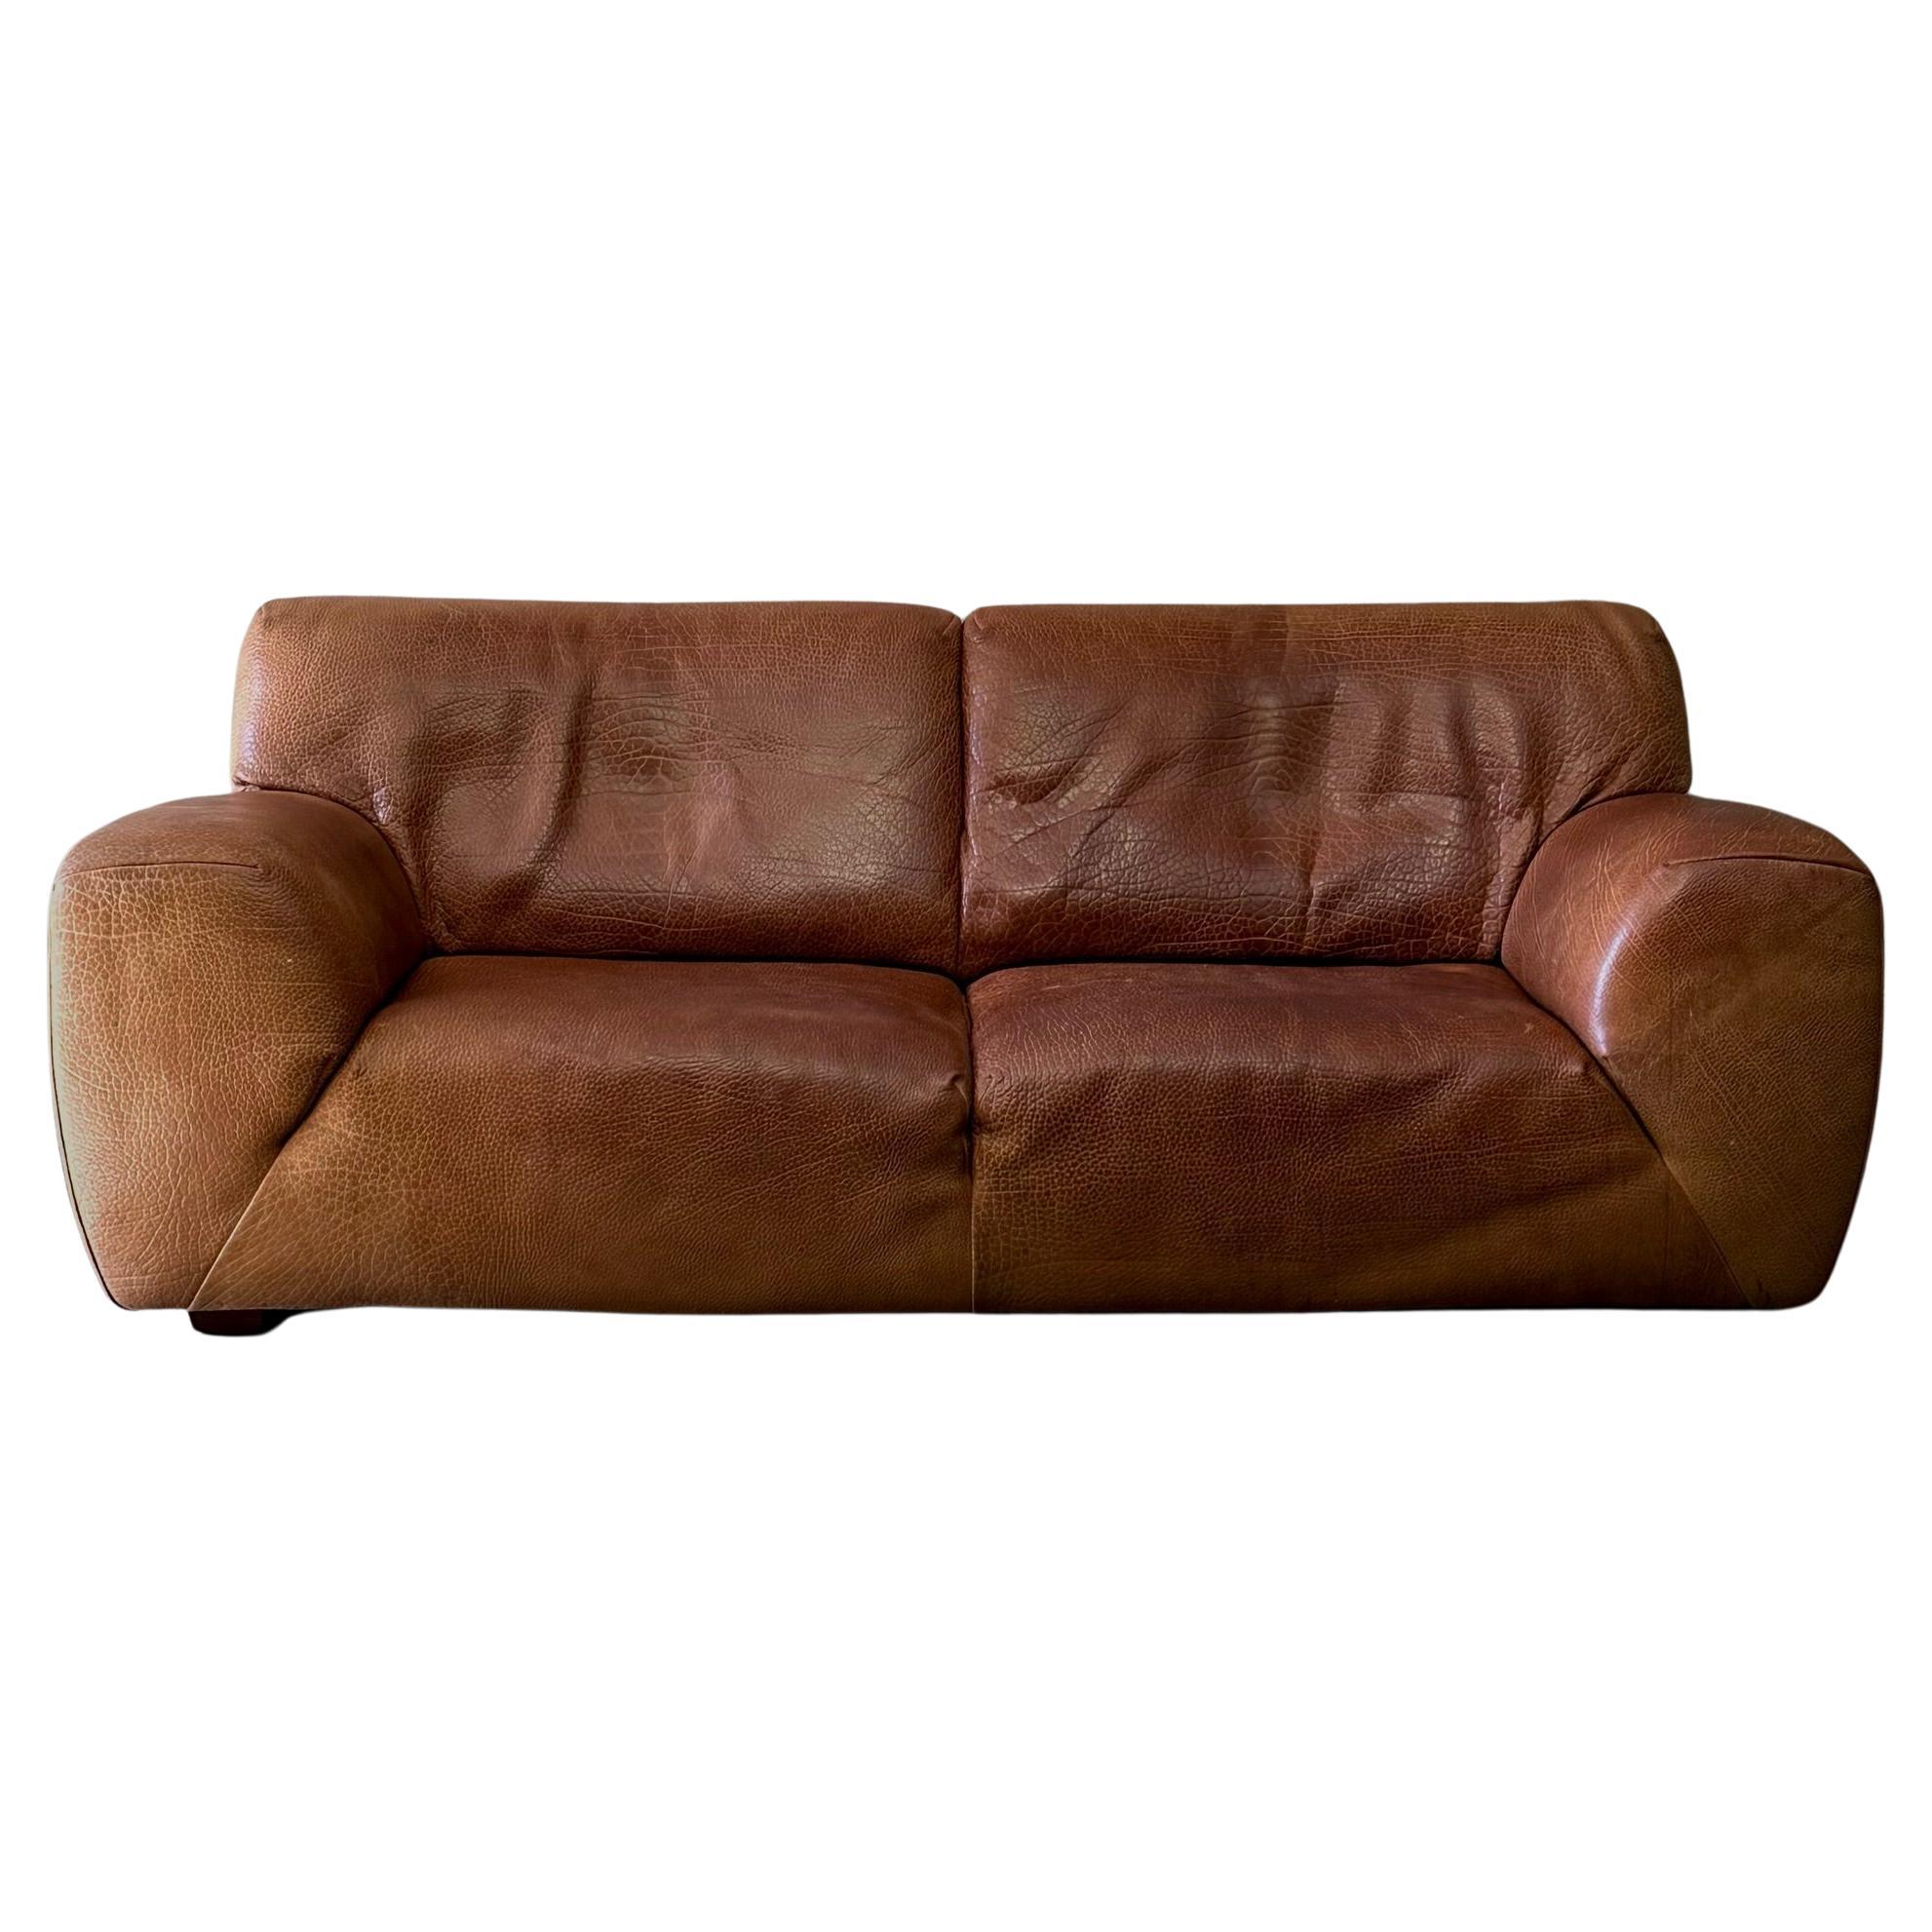 Leather Molinari Sofa